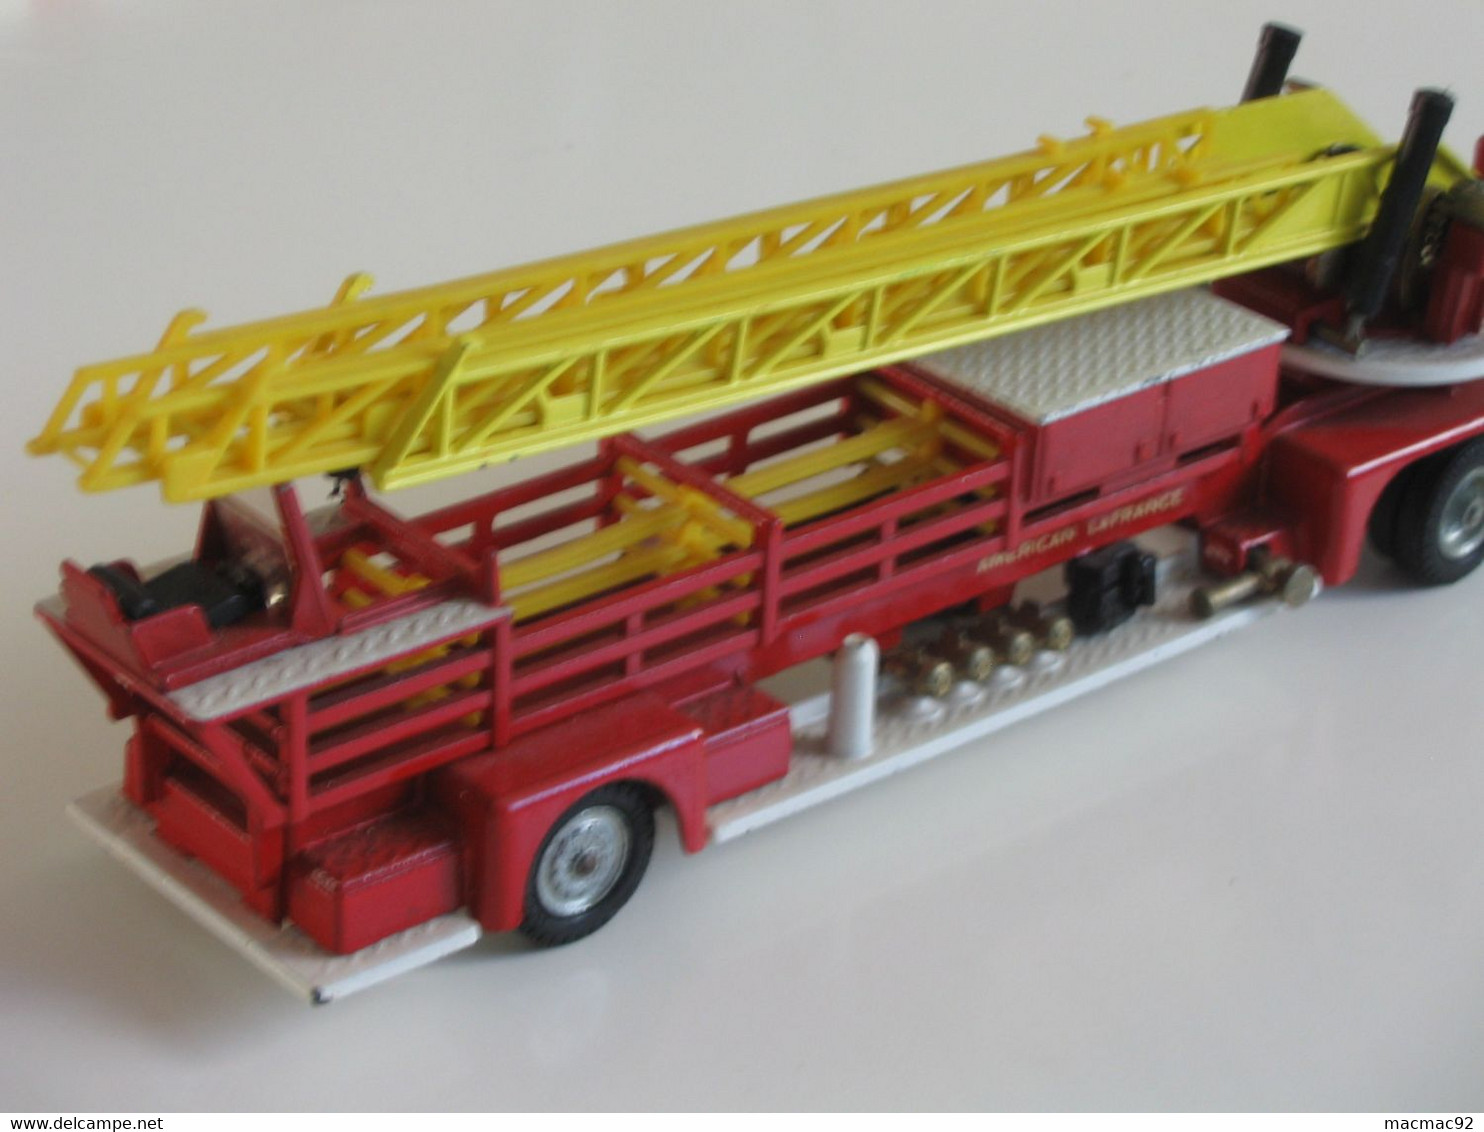 CORGI MAJOR TOYS - Superbe camion de pompier grande échelle - Aerial Rescue Tractor    **** EN ACHAT IMMEDIAT ****.